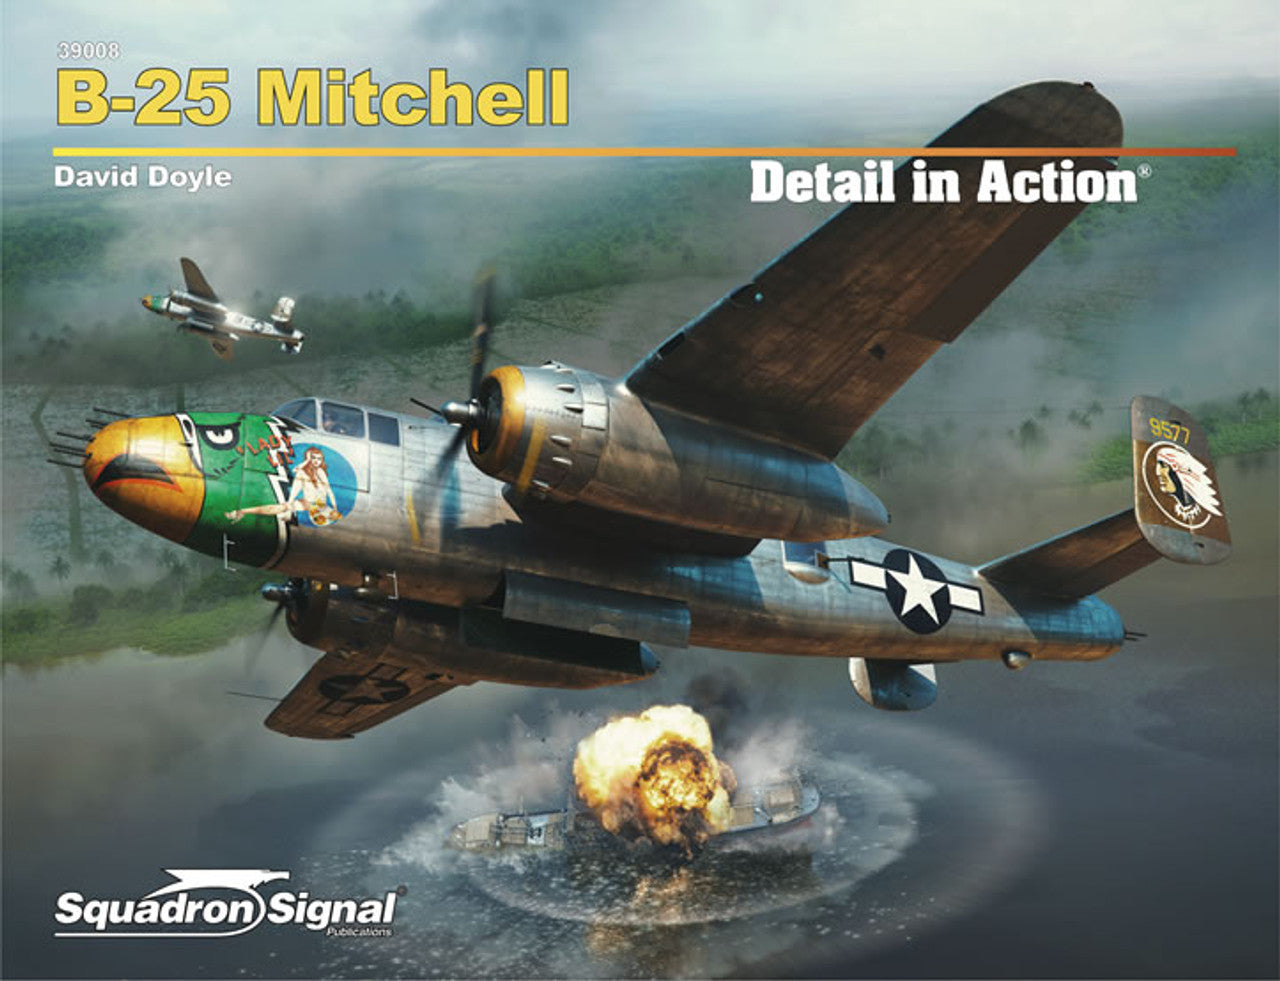 b-25 mitchell warplane book